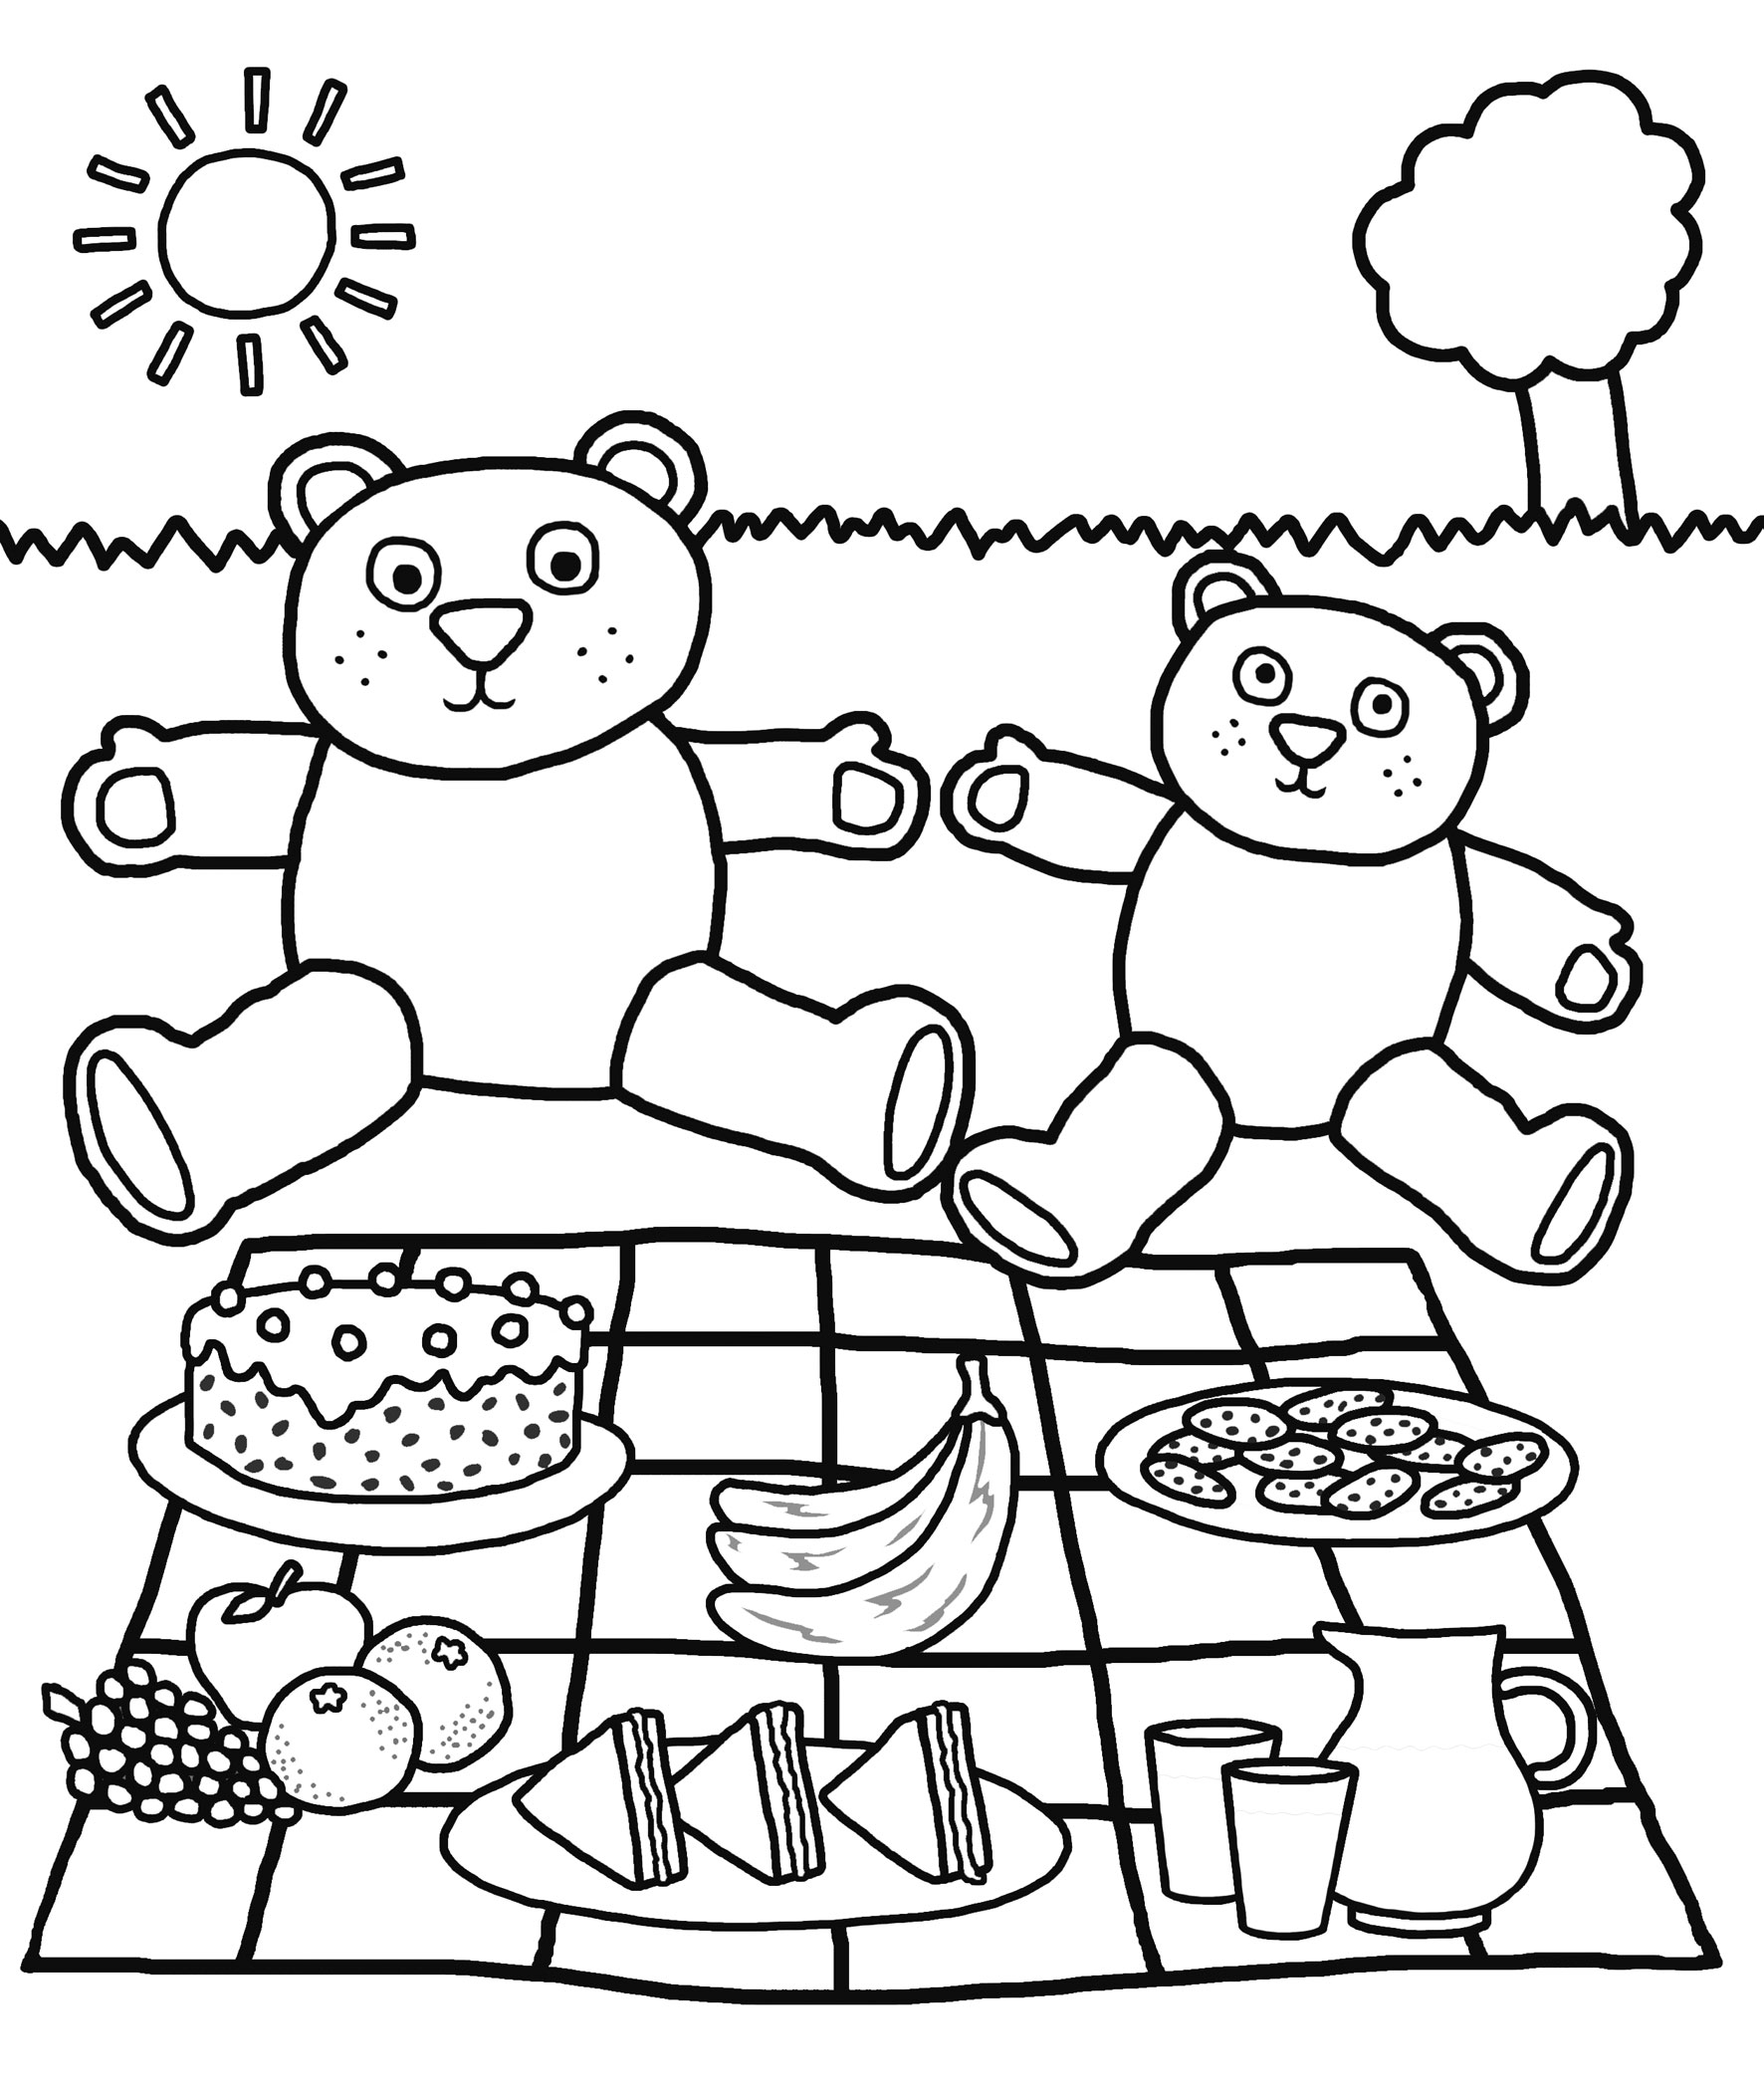 free-printable-kindergarten-coloring-pages-for-kids-color-by-letter-worksheet-for-kindergarten